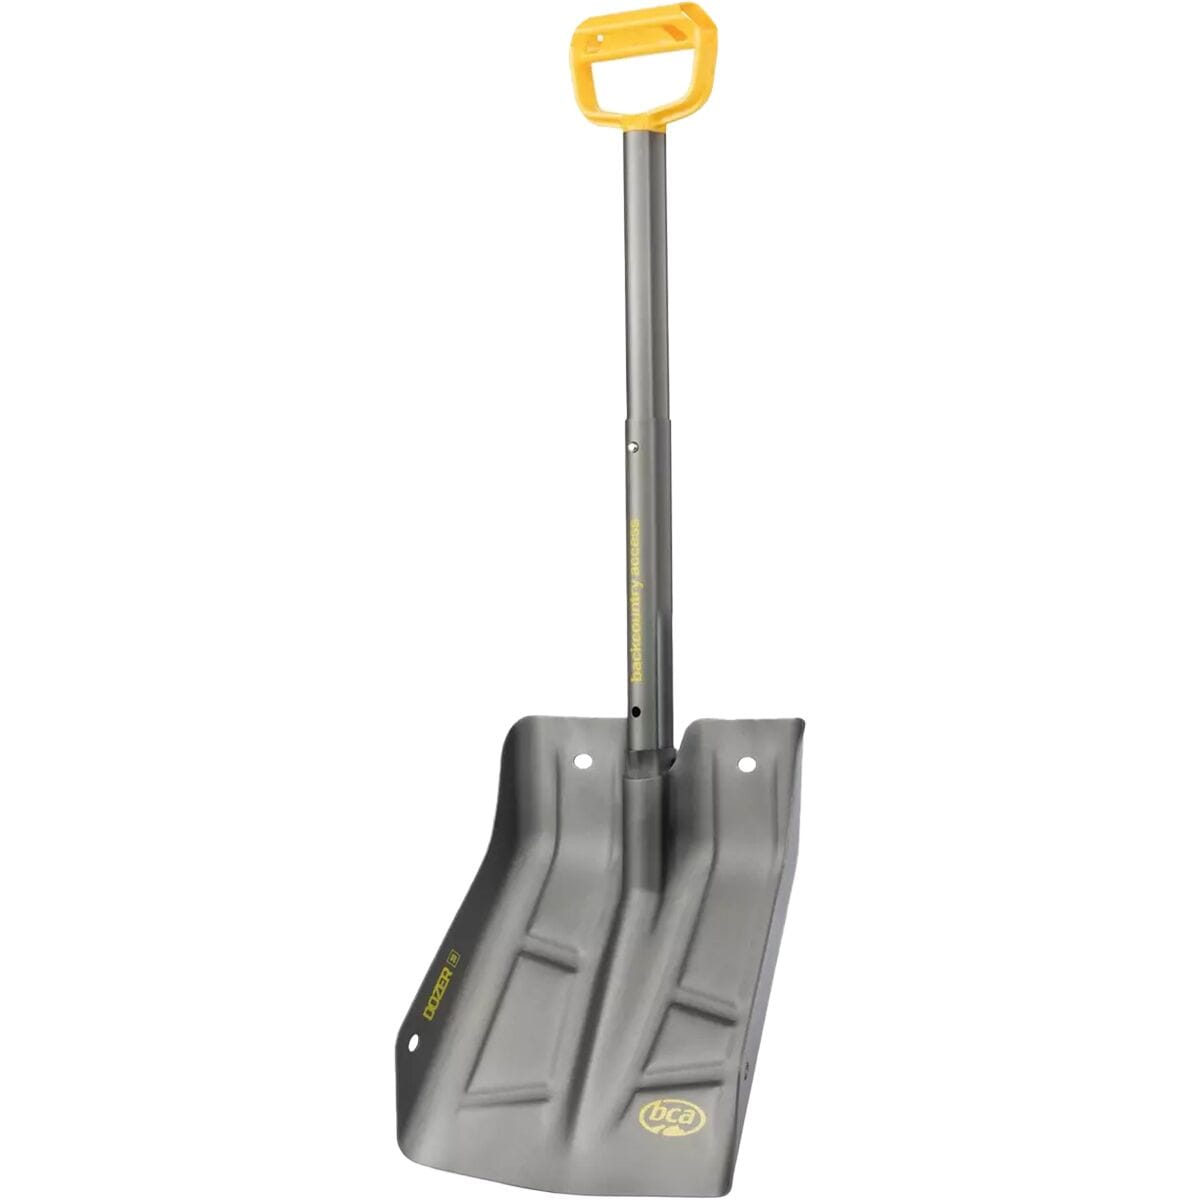 Backcountry Access Dozer 3D Shovel